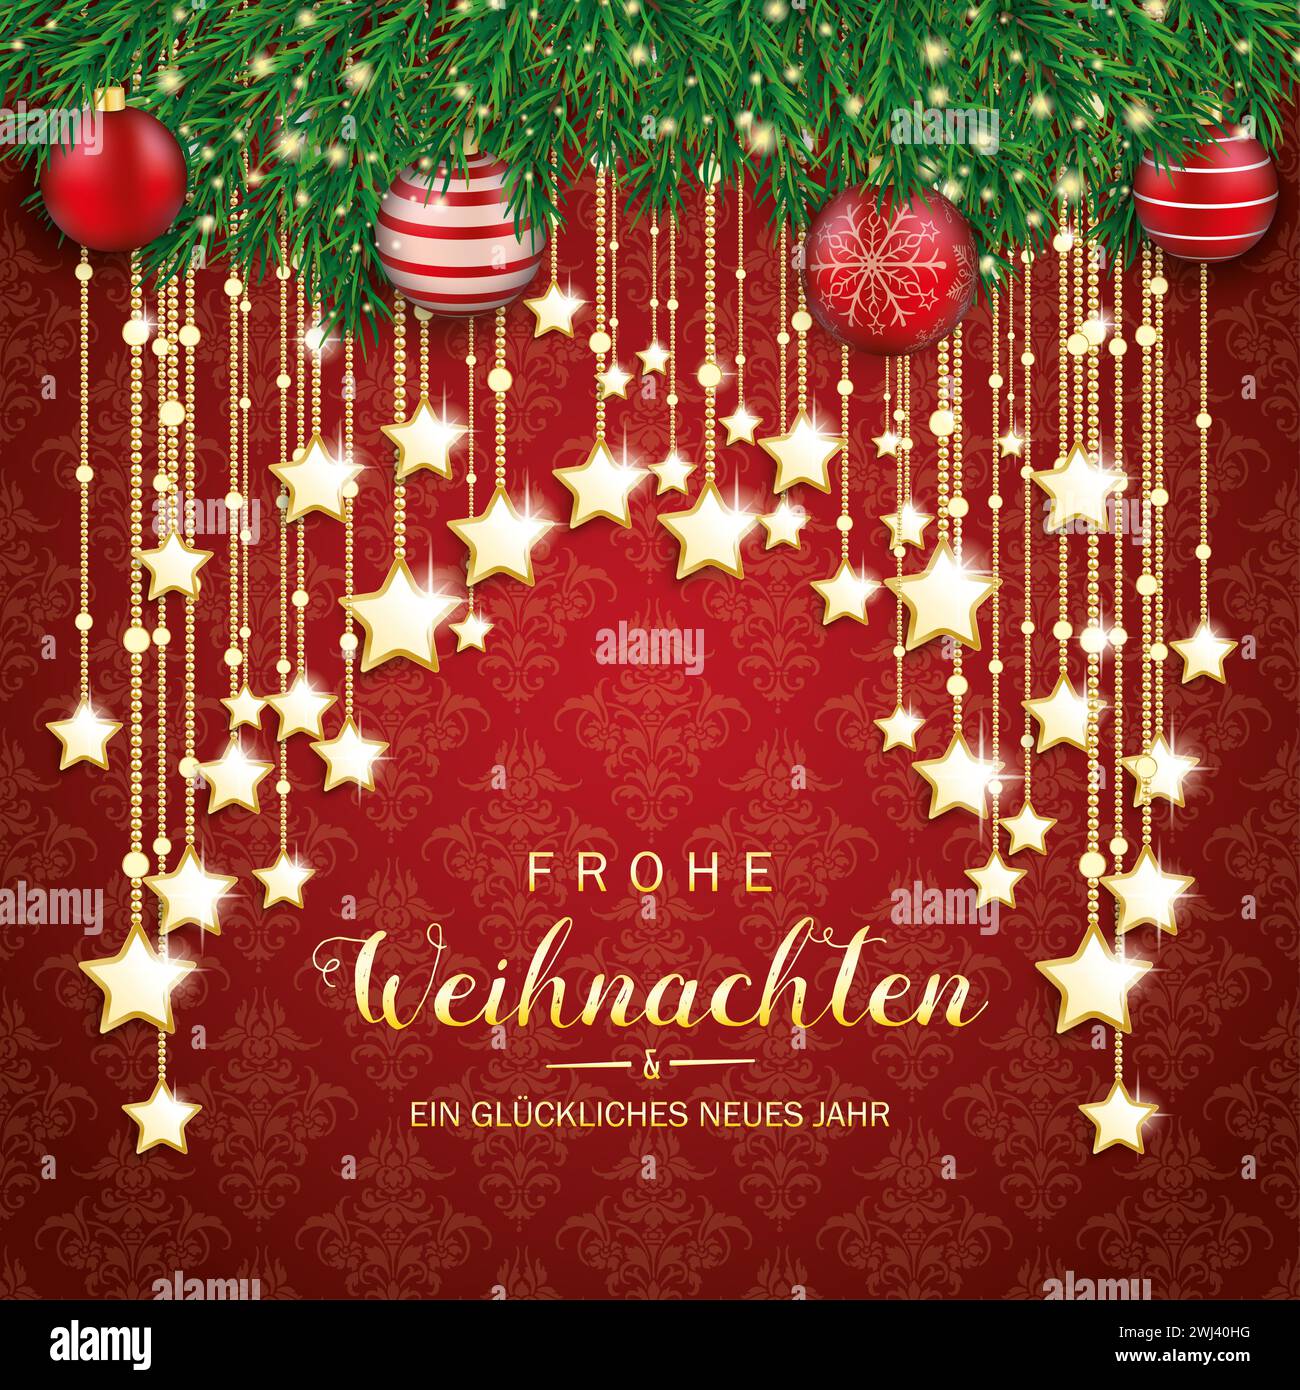 Frohe Weihnachten und ein glückliches neues Jahr, Übersetzung Frohe Weihnachten und Happy New Year. EPS 10-Vektordatei. Stockfoto